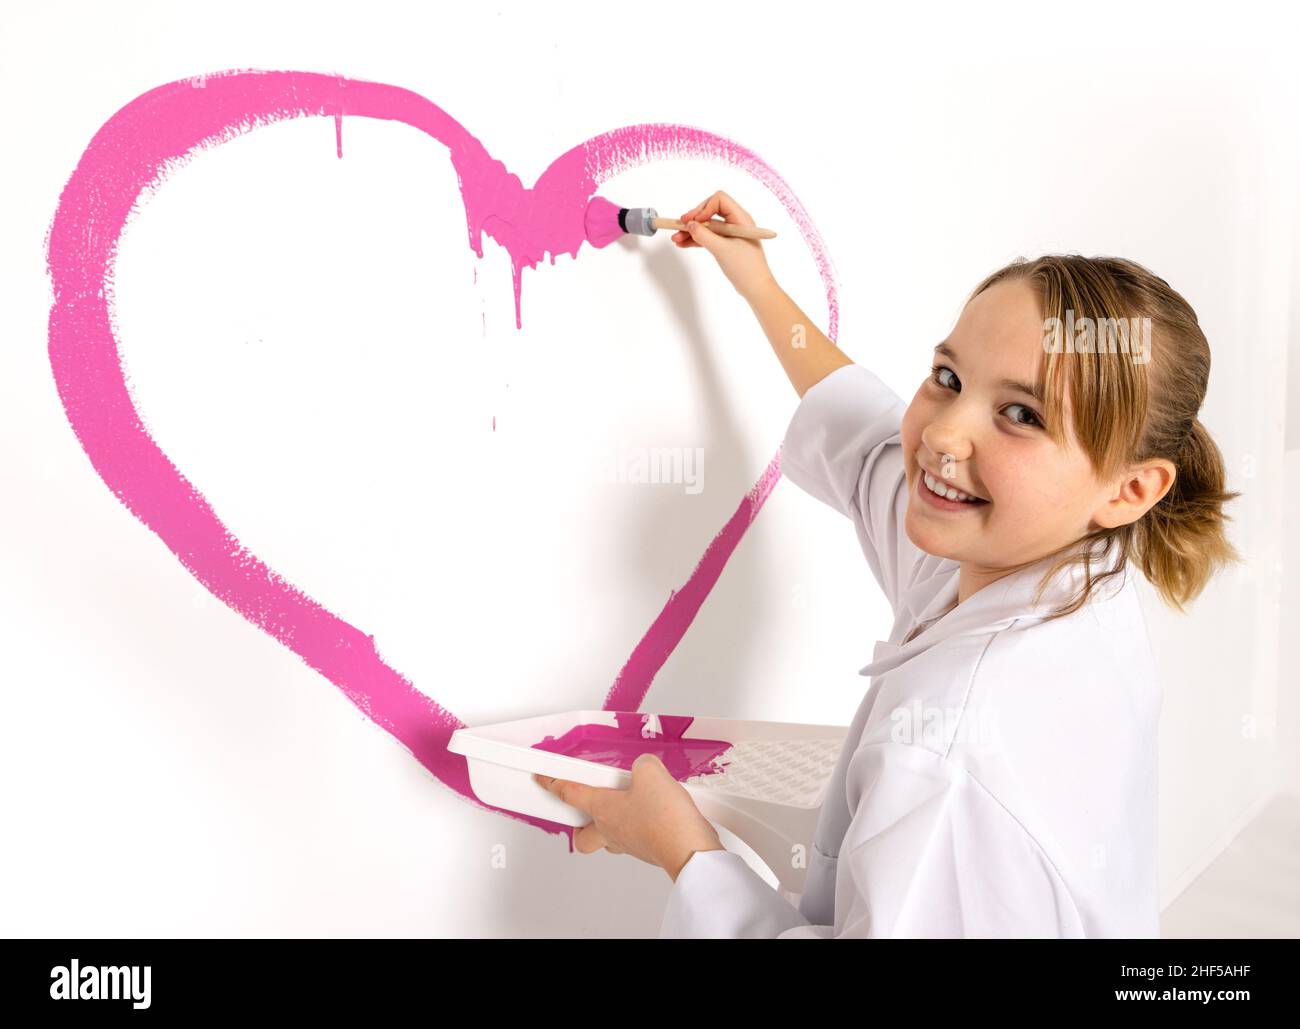 Jeune fille de 10 ans peignant un coeur rose avec une brosse sur le mur.La fille regarde dans l'appareil photo avec un sourire heureux. Banque D'Images